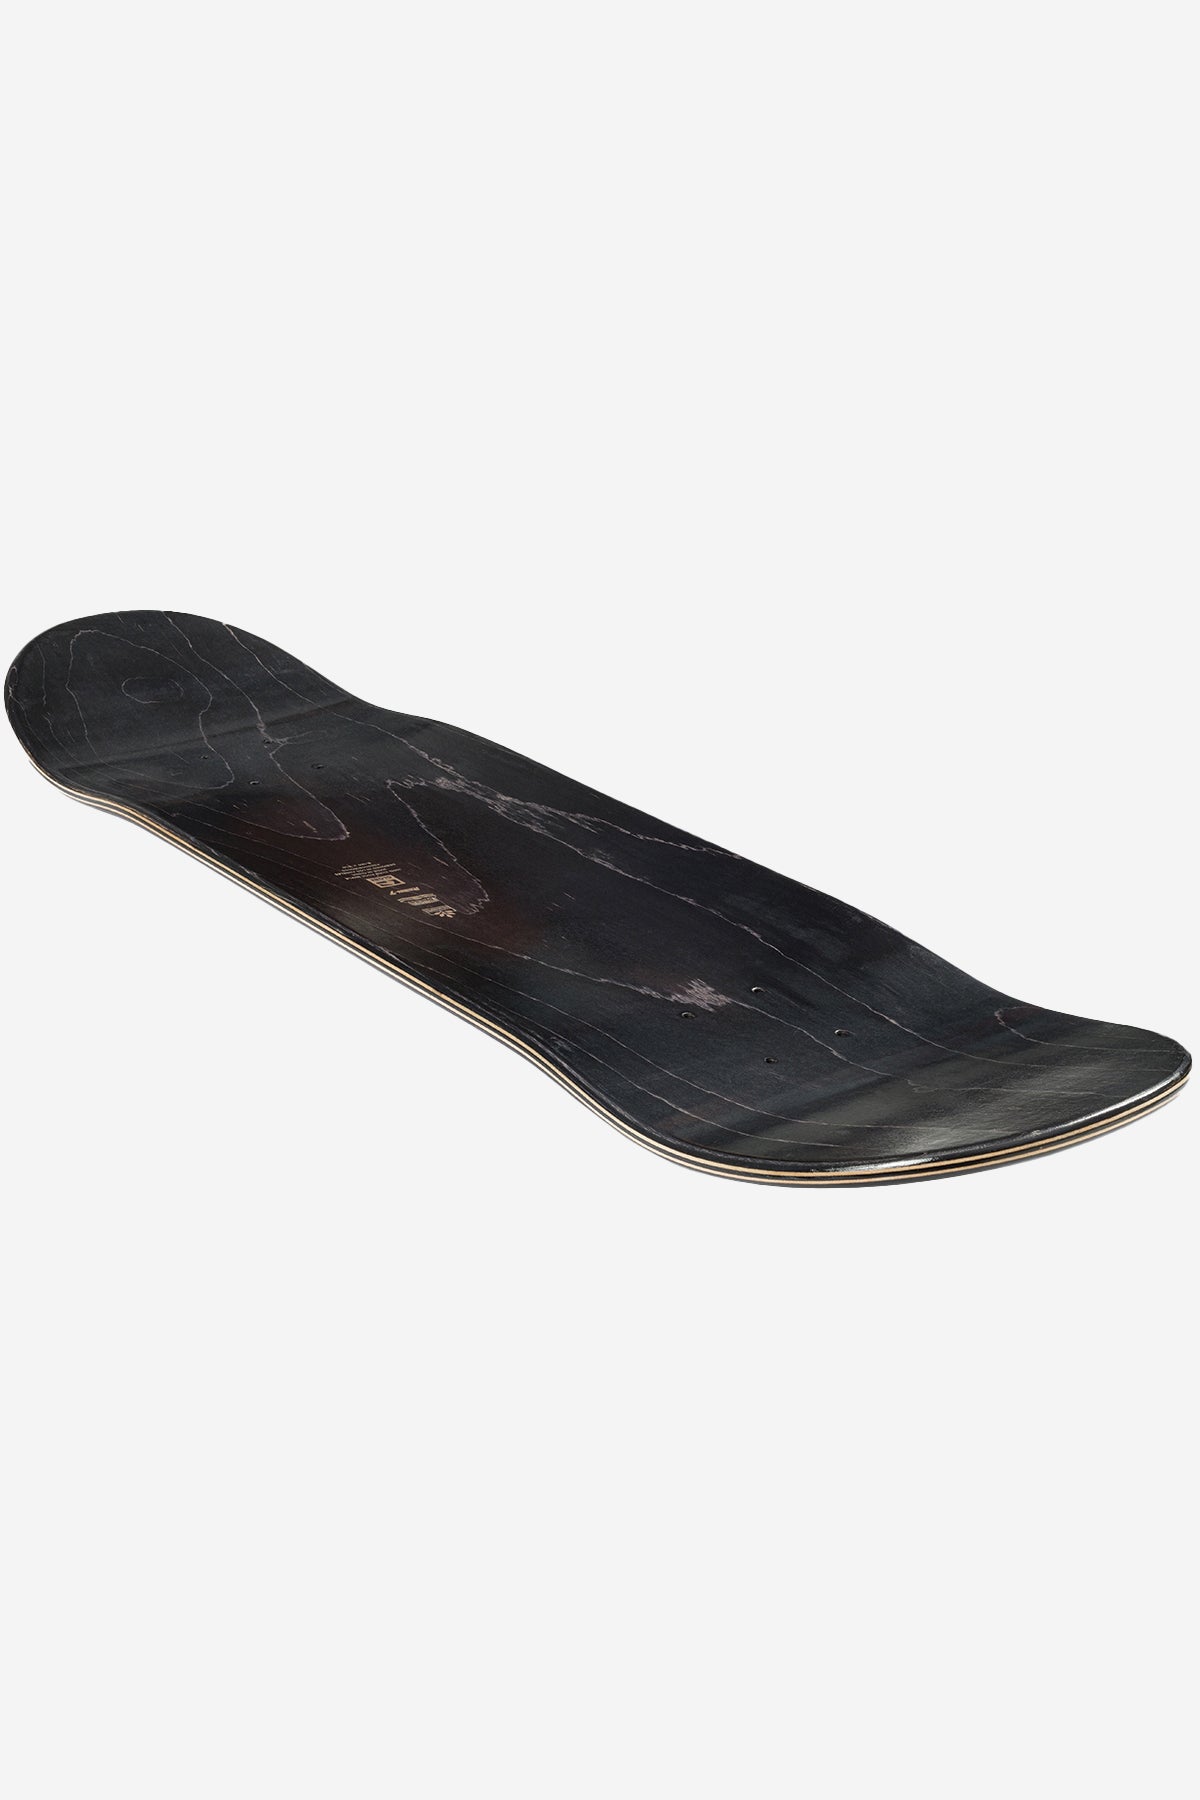 Globe - G1 Argo - Preto Camo - Skate de 8.125" Deck